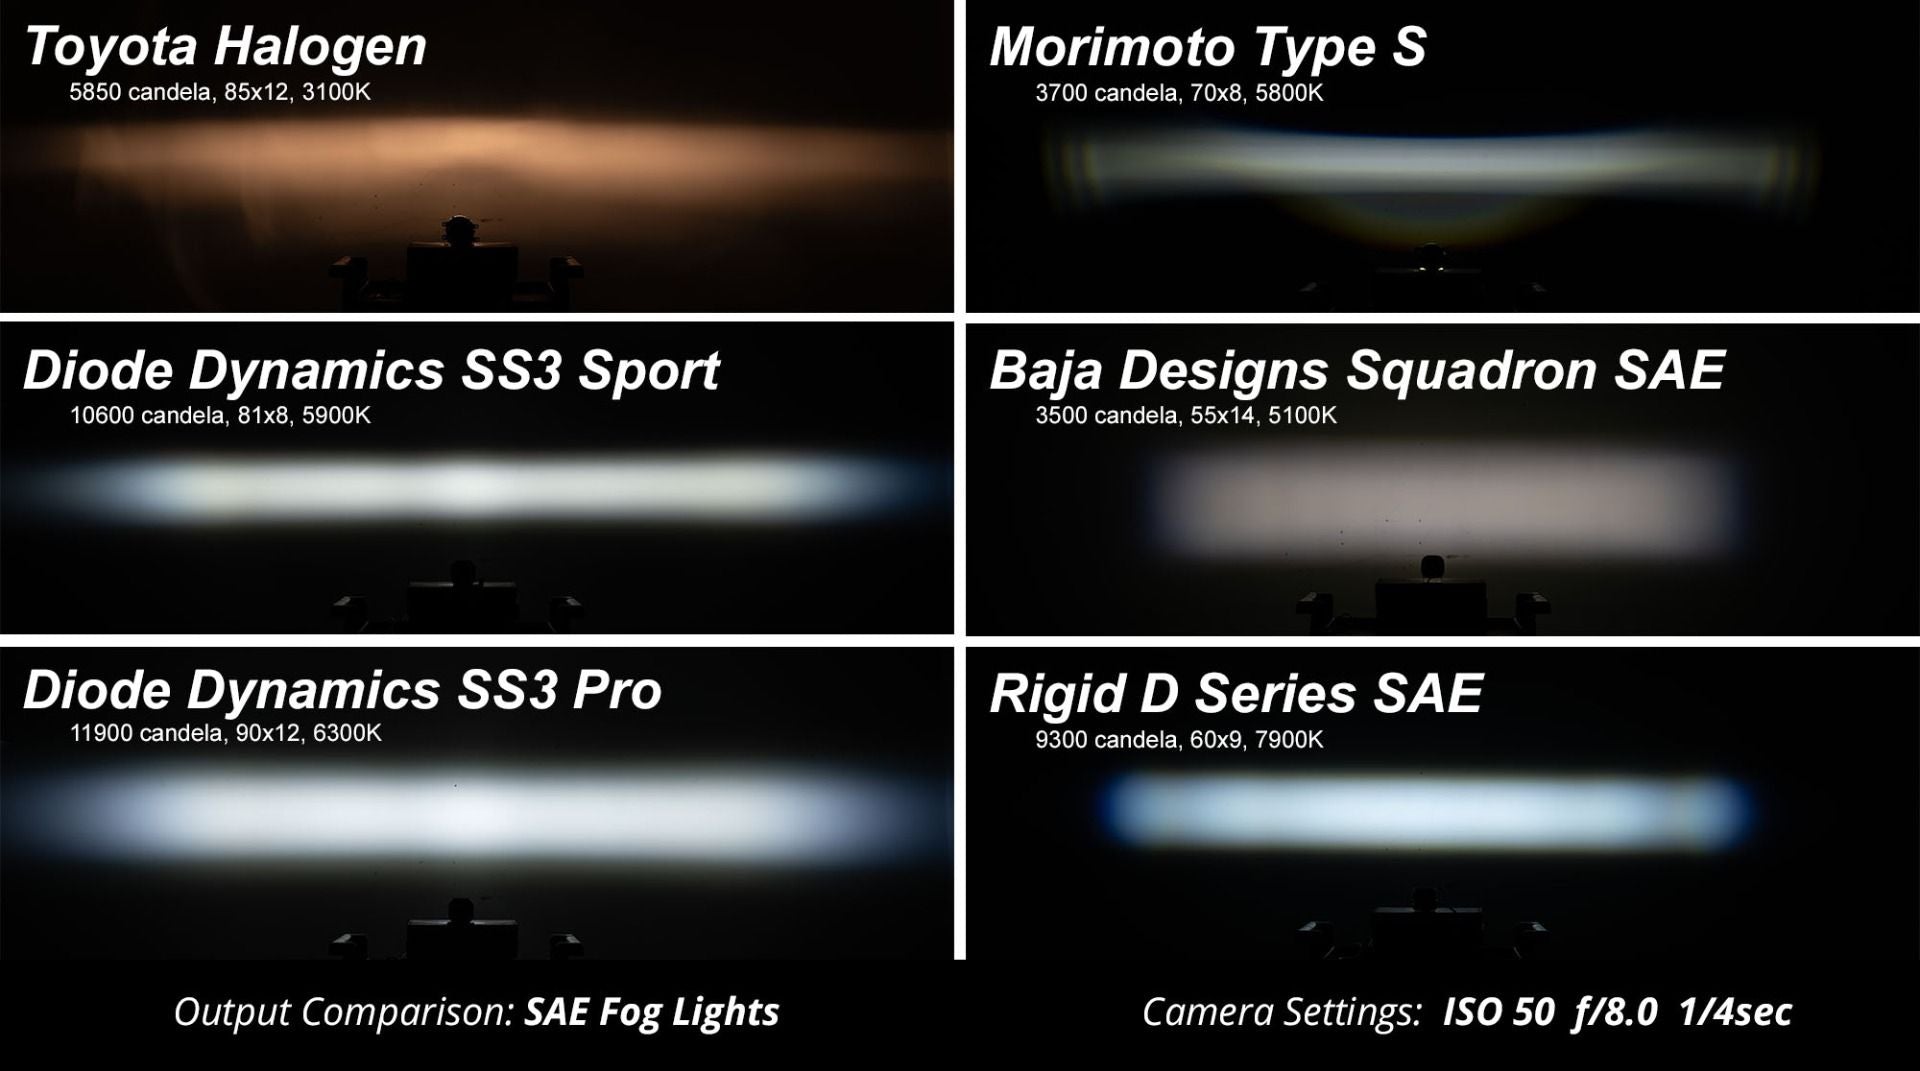 SS3 LED Fog Light Kit For 2014-2015 GMC Sierra 1500